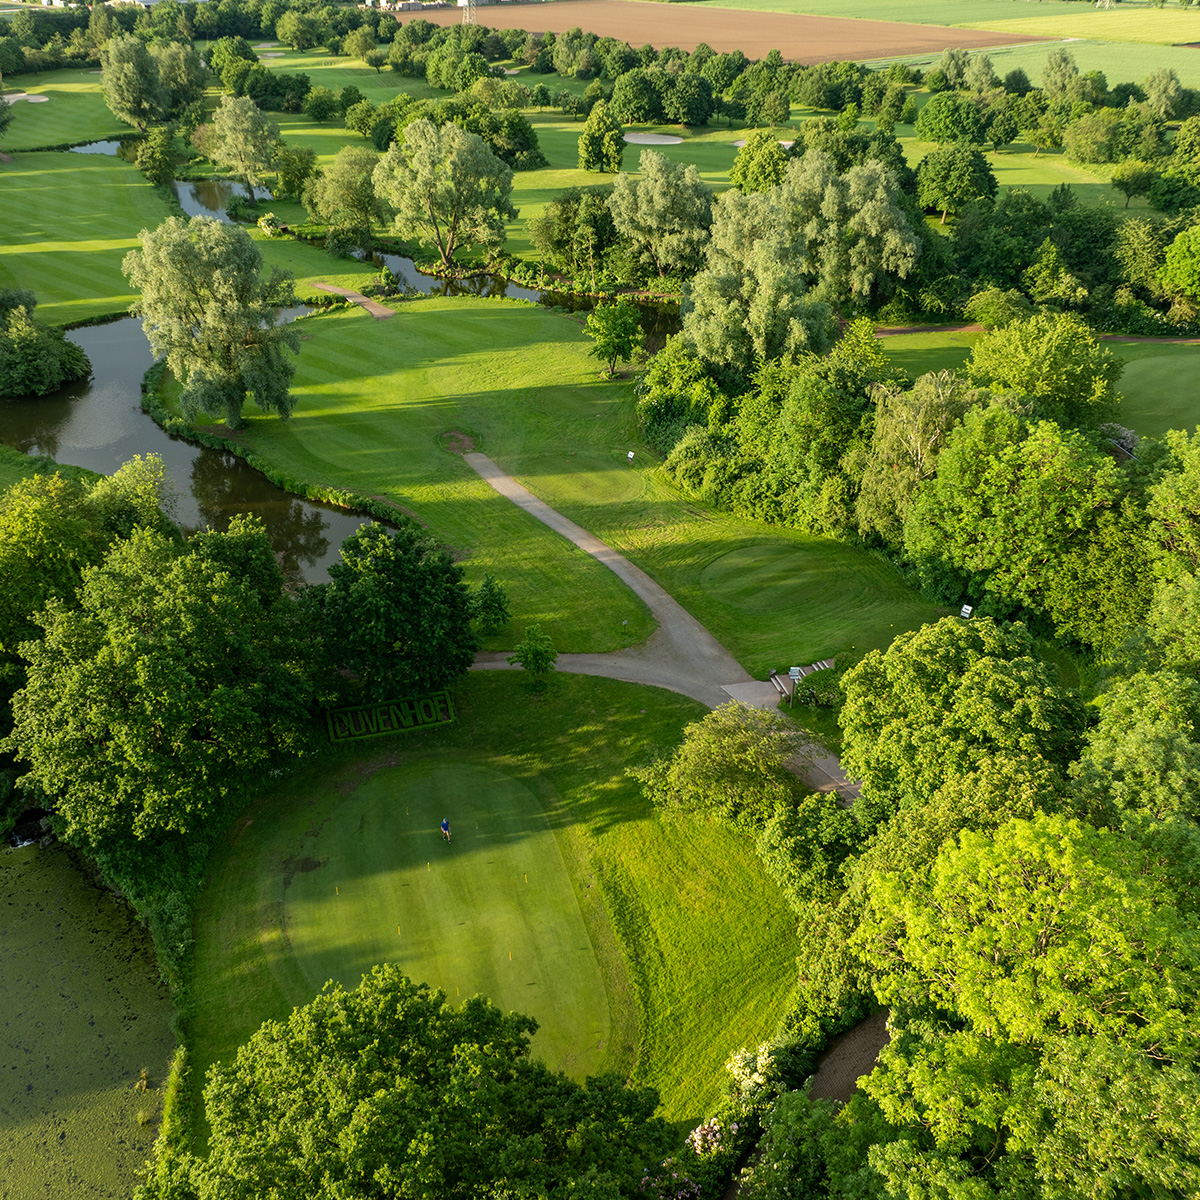 Luftaufnahme eines gepflegten Golfplatzes mit grünen Fairways und Bäumen im Hintergrund, die die malerische Landschaft umrahmen. Im Vordergrund ist ein Golfer auf dem Grün zu sehen.